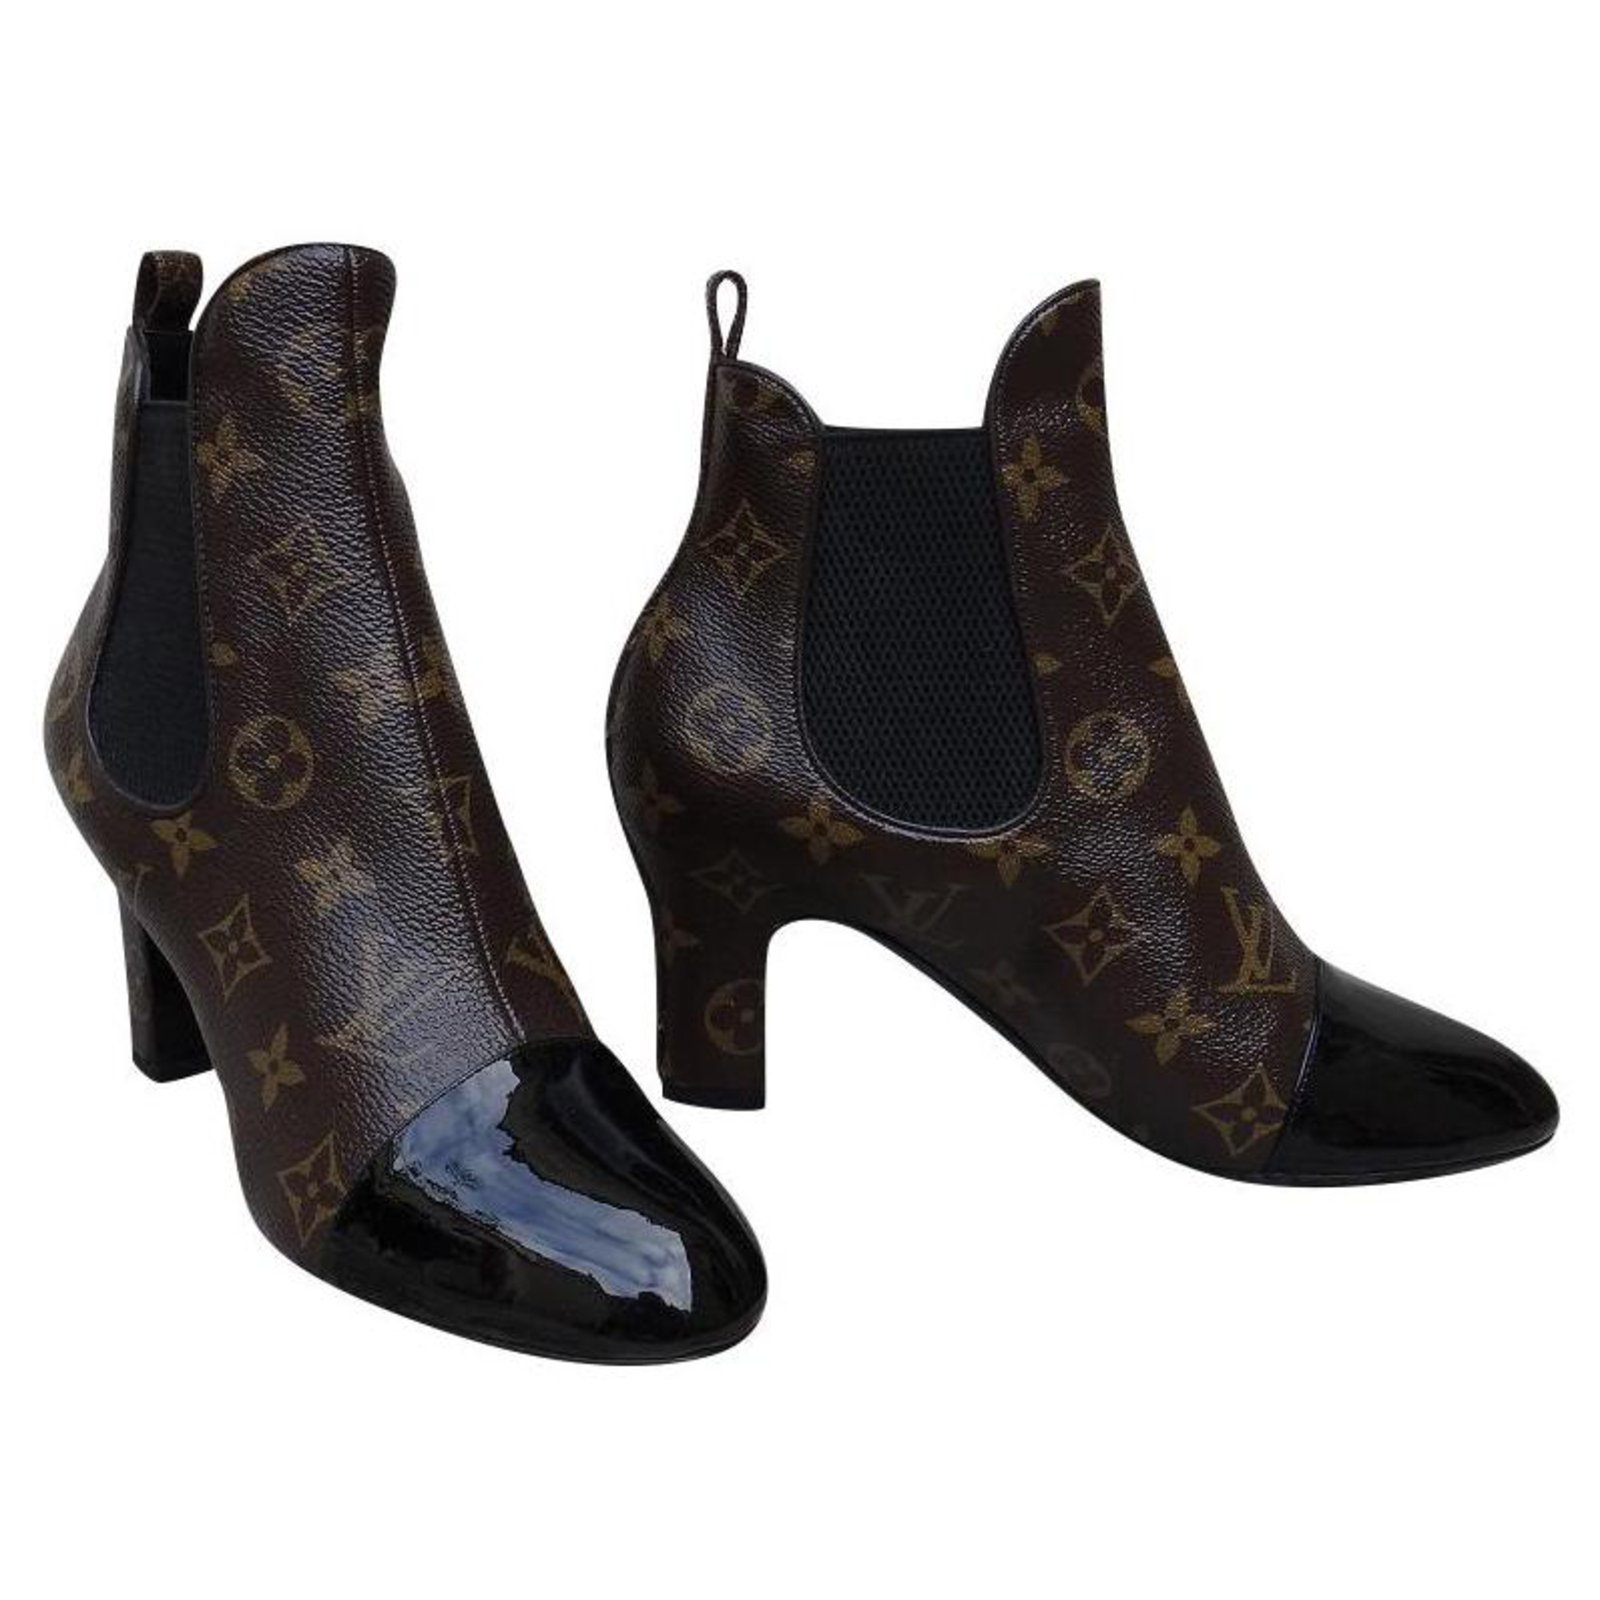 Louis Vuitton Monogram Canvas Star Trail Ankle Boots - Size 8 / 38